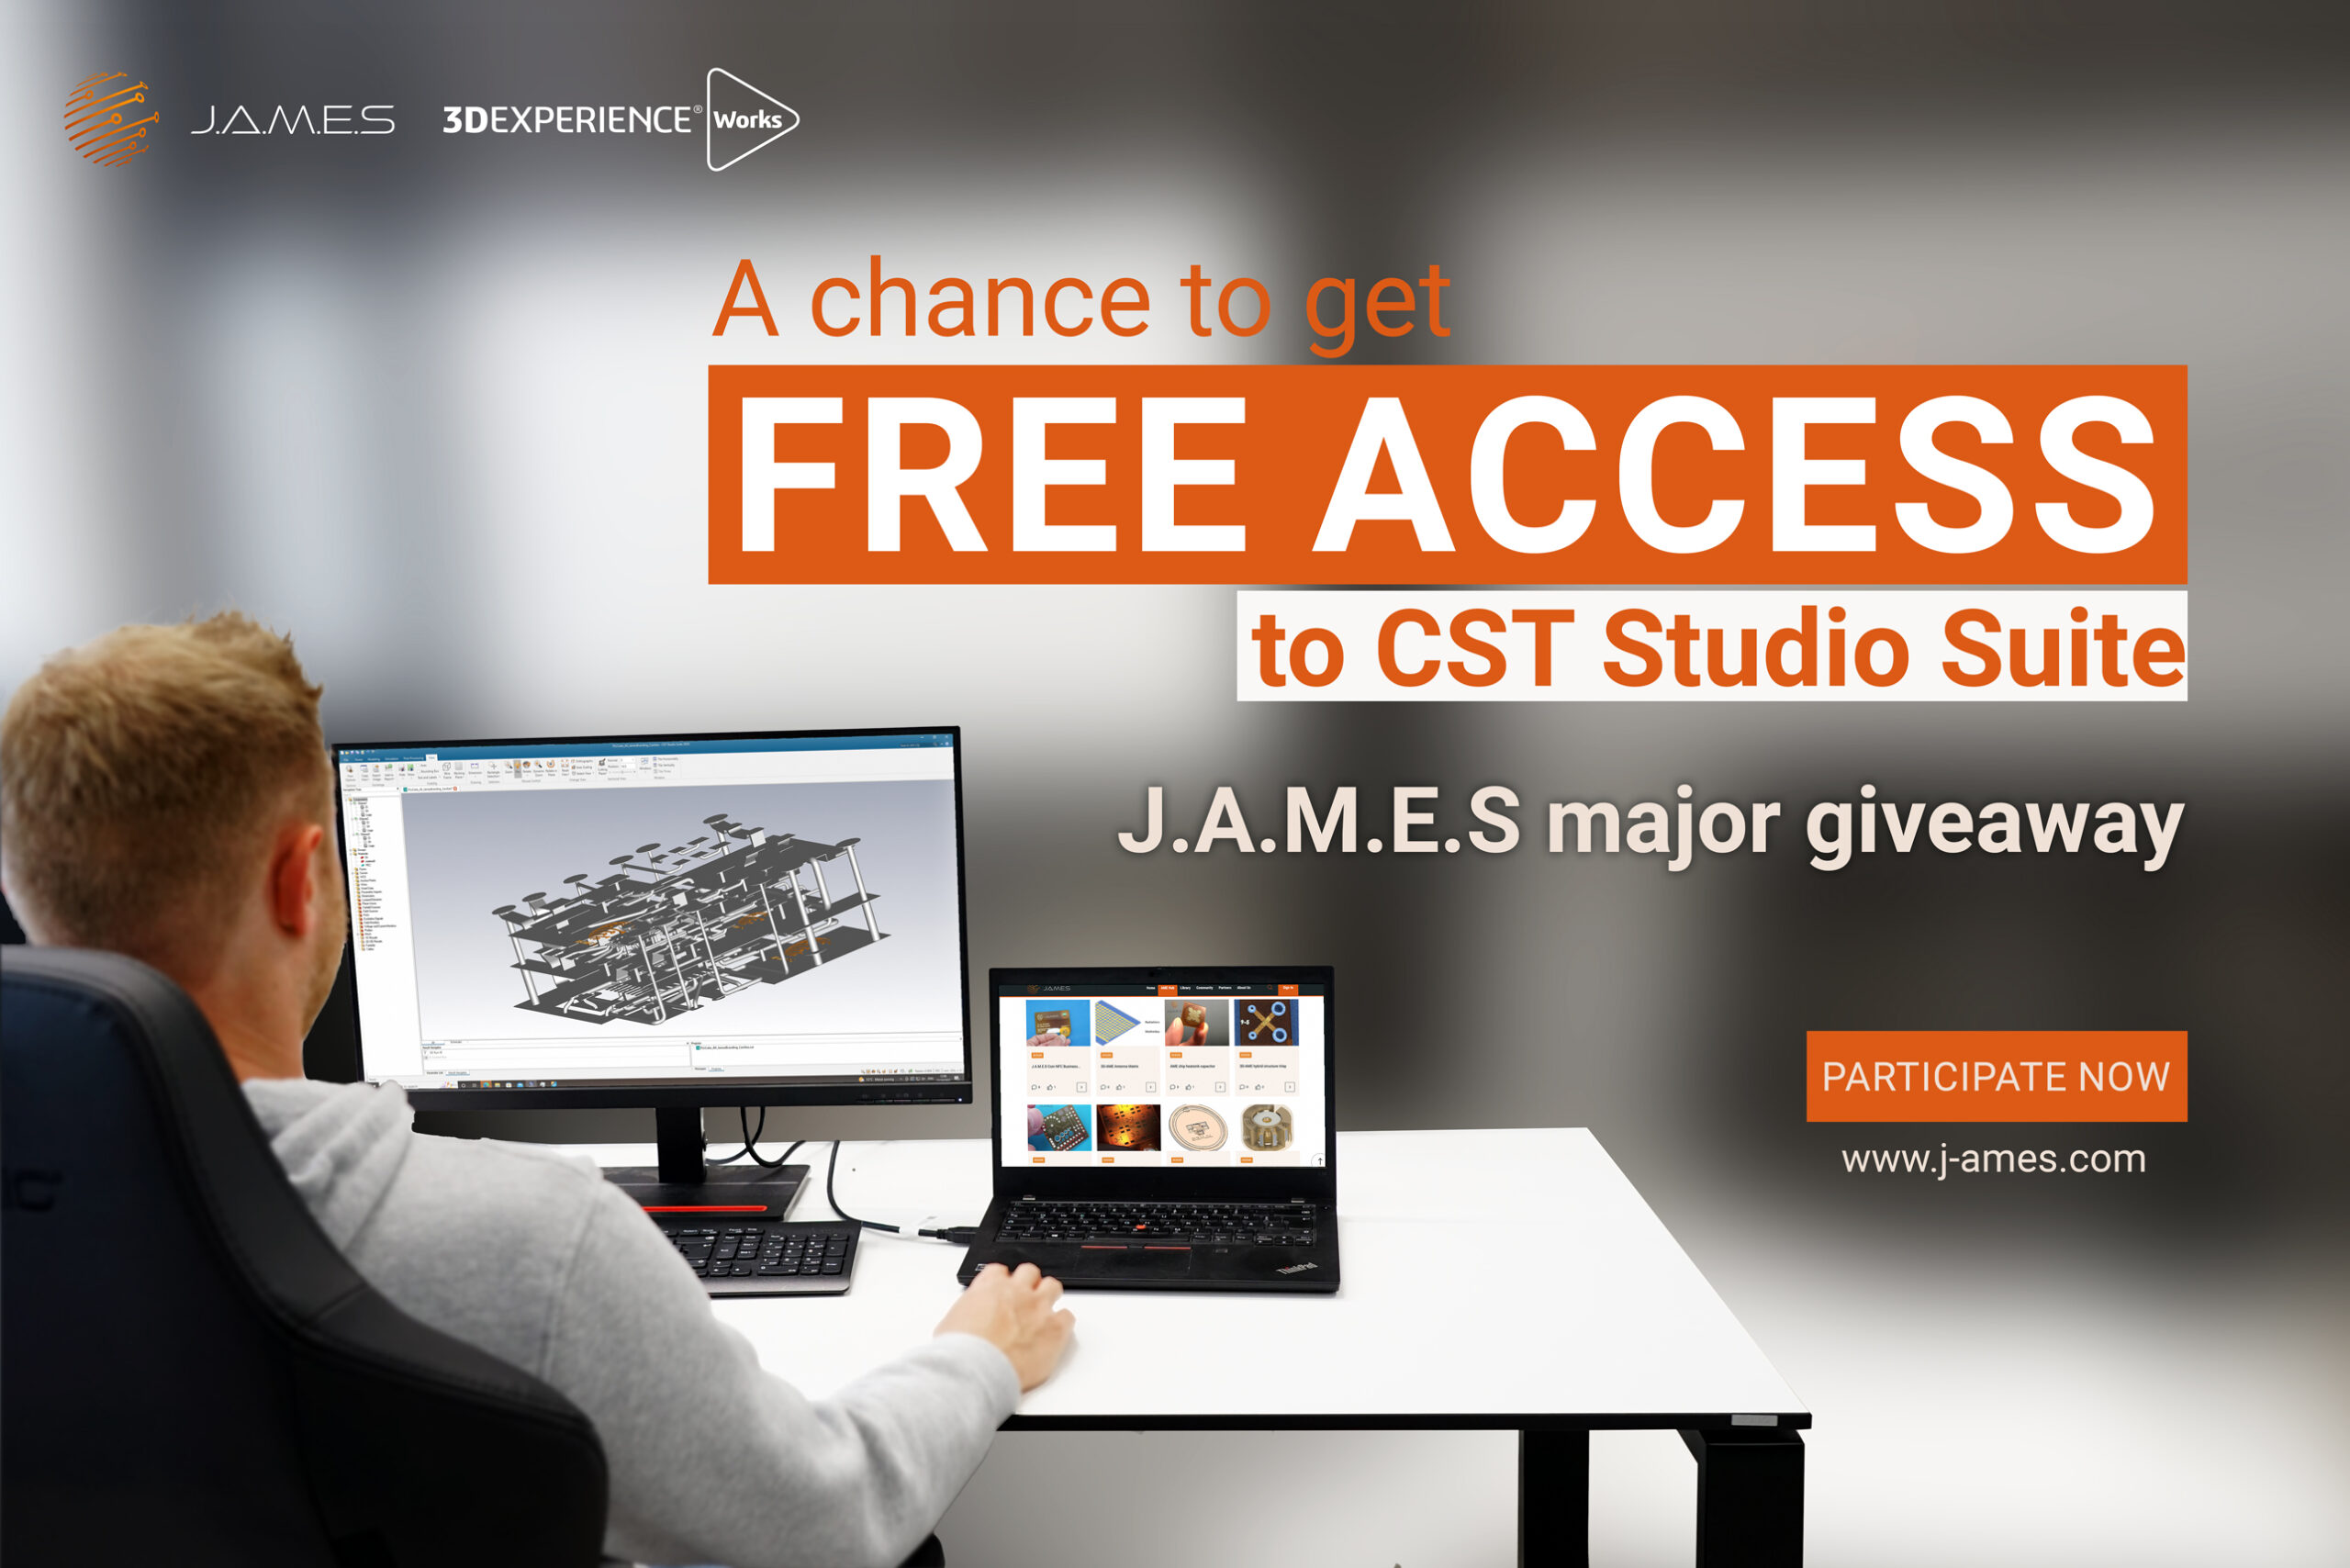 J.A.M.E.S announces major giveaway of 10 CST Studio Suite licenses